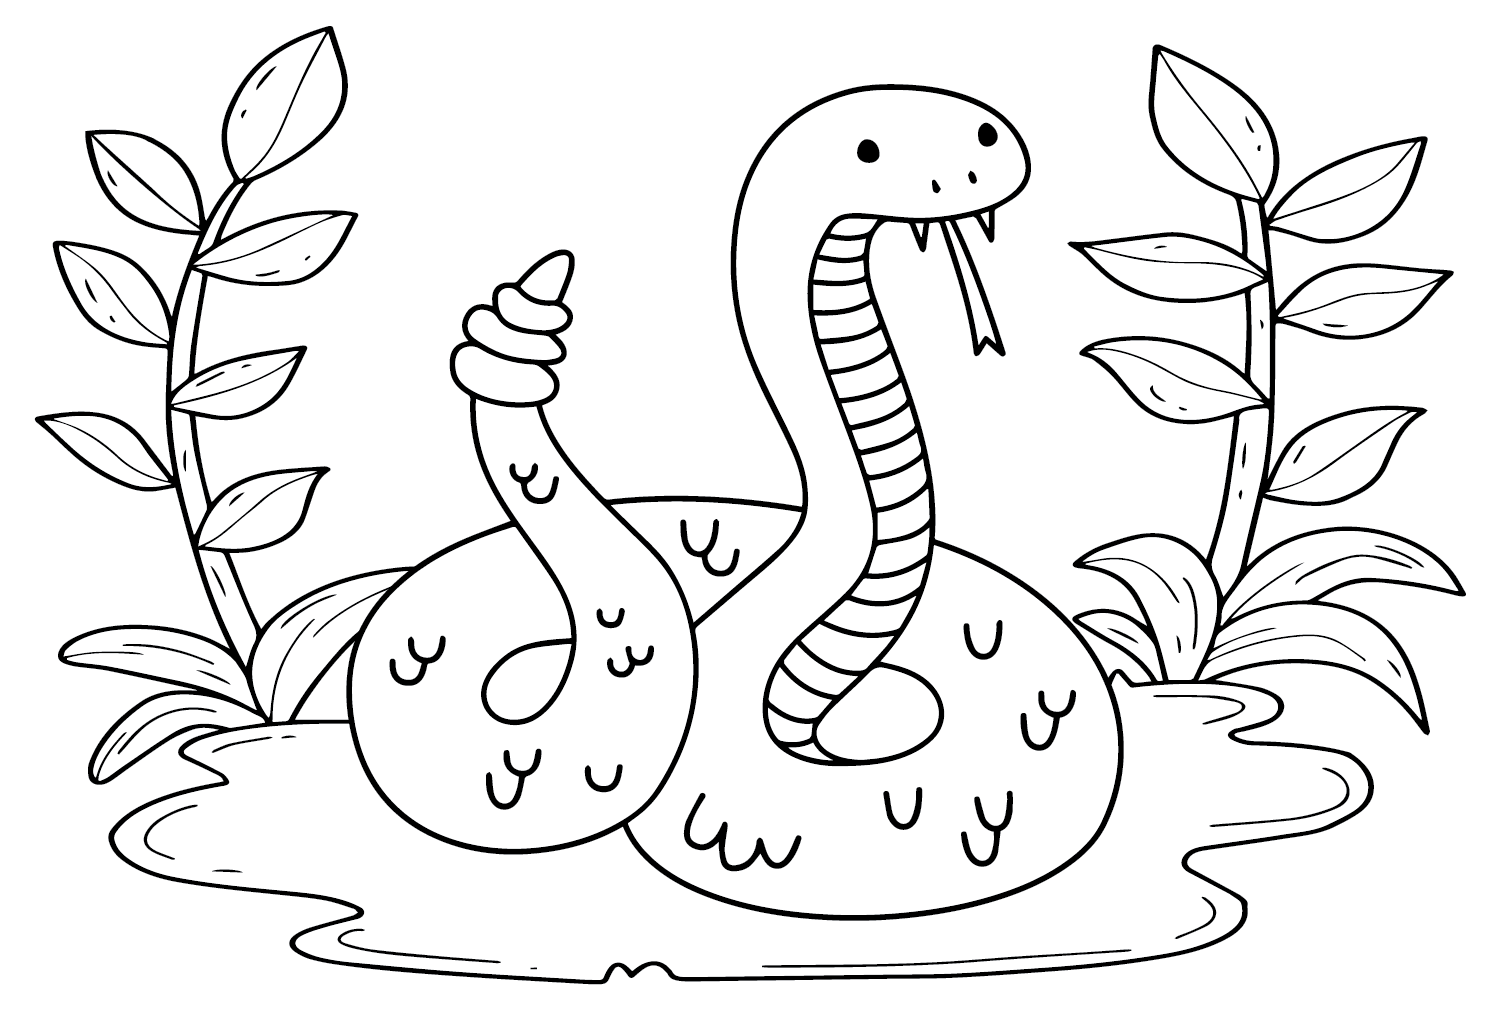 Immagine di serpente a sonagli da colorare da Serpente a sonagli